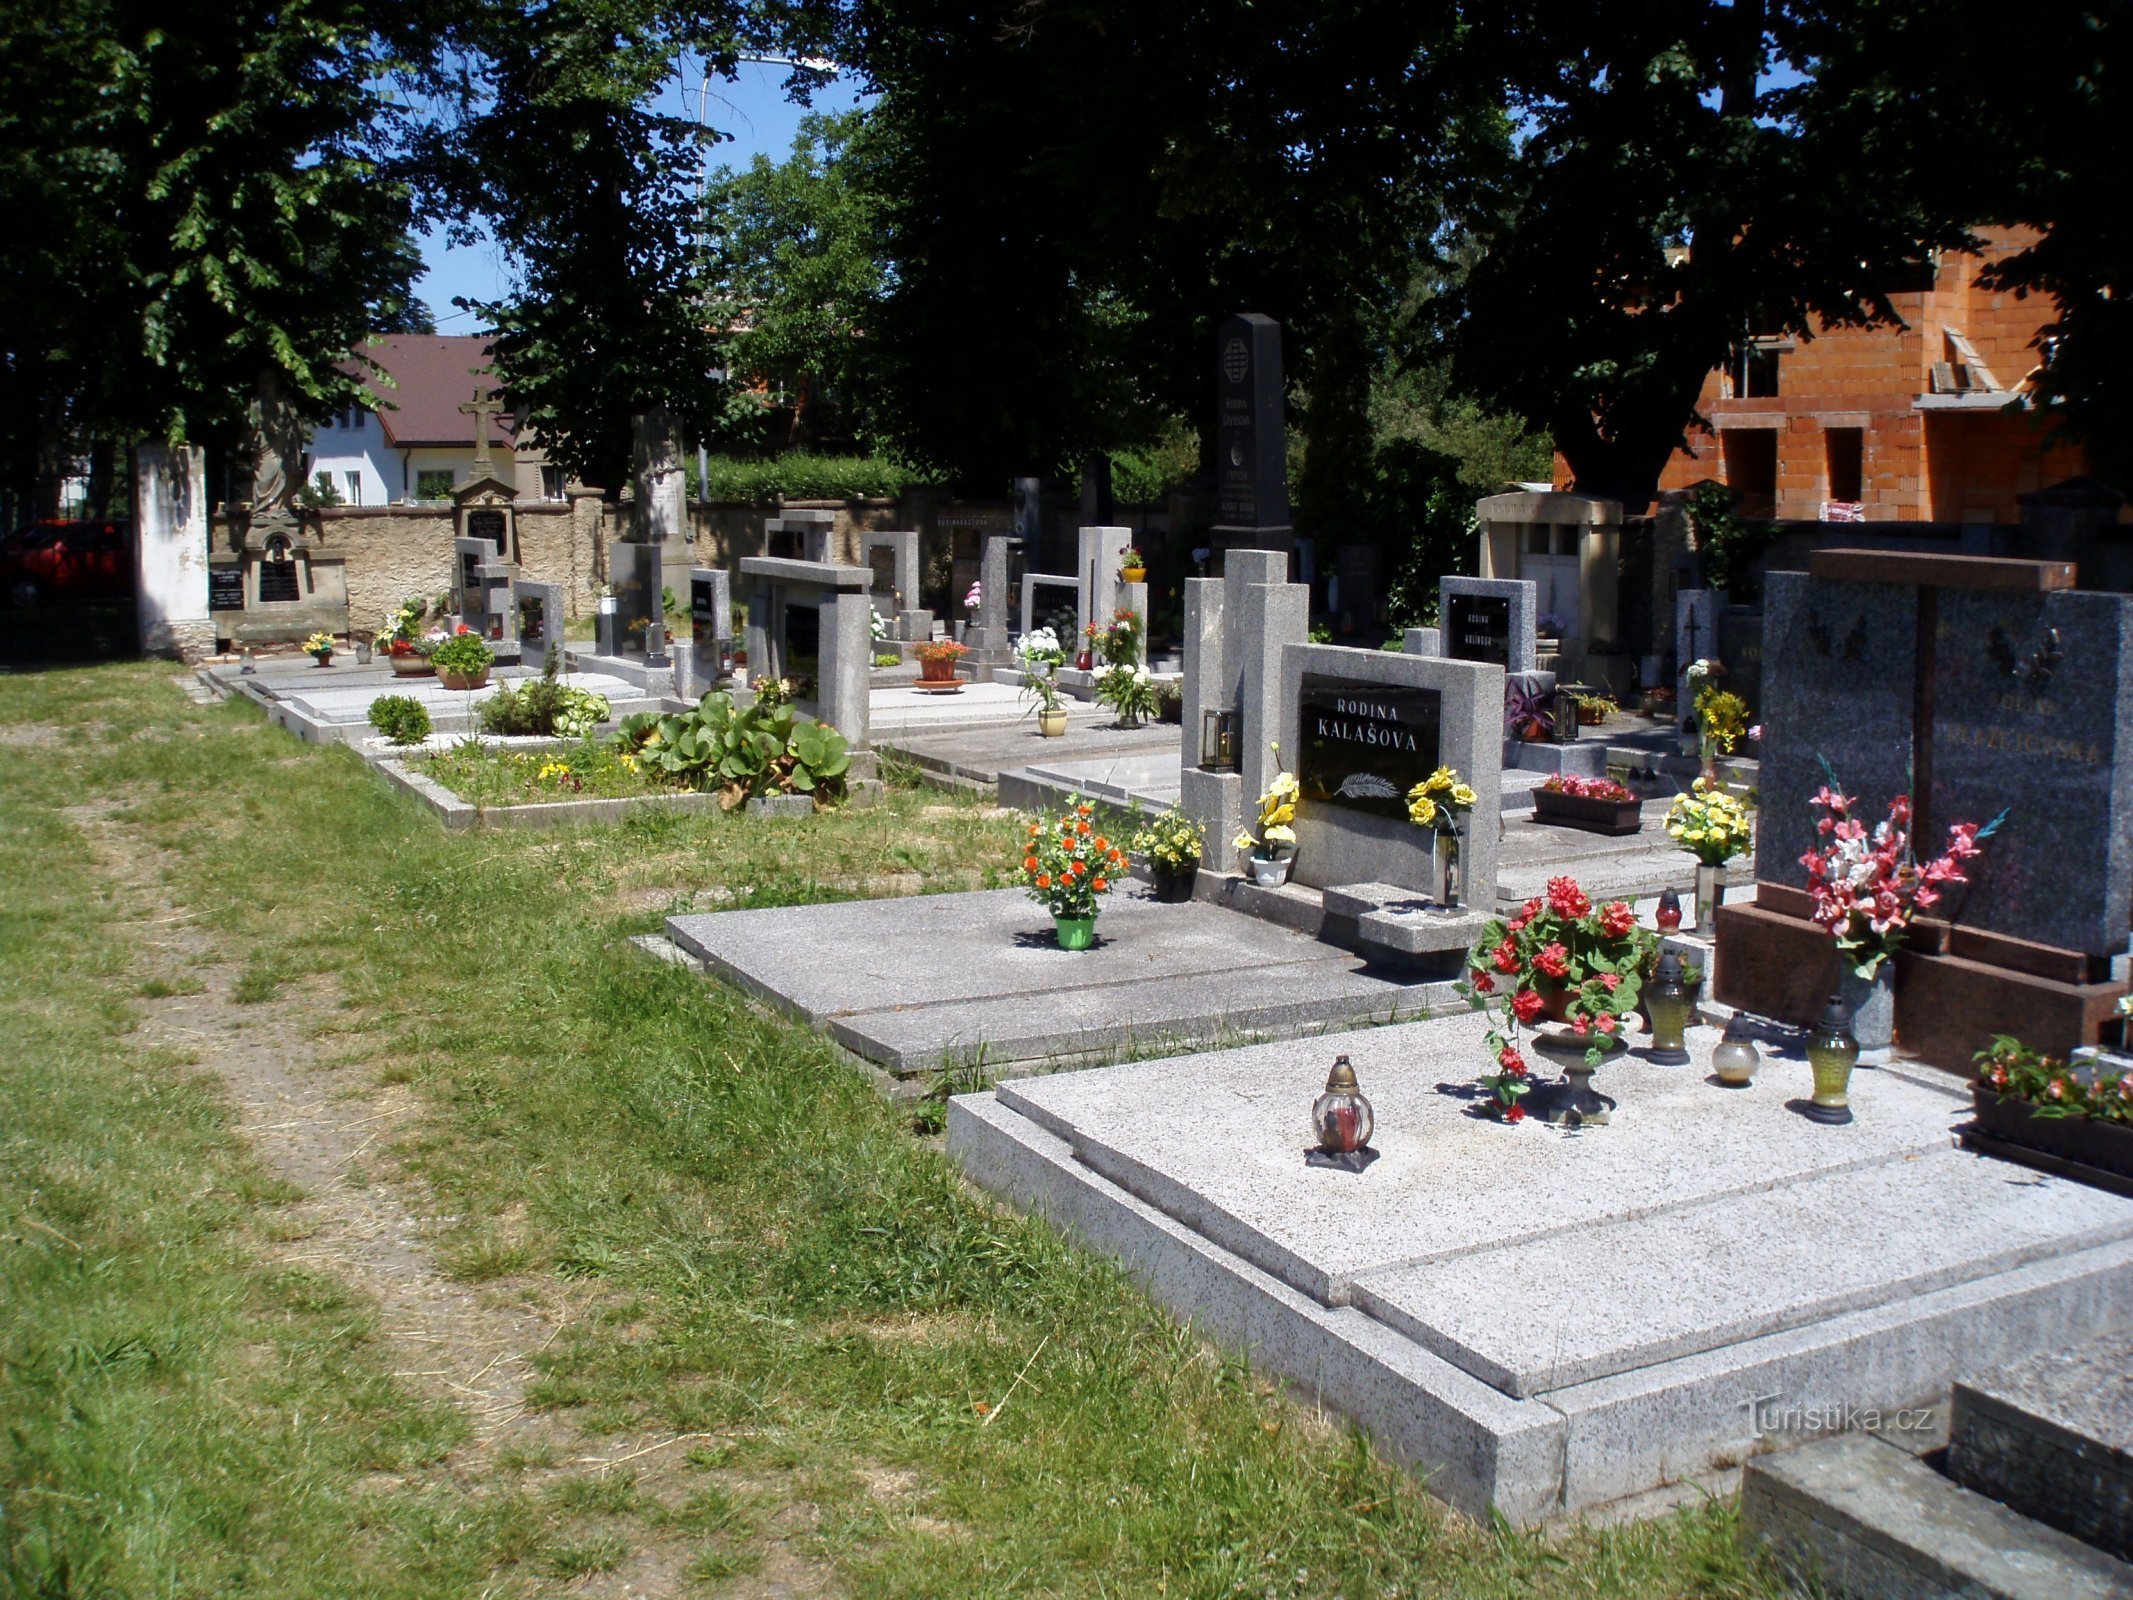 Кладбище в Мальшов Лготе (Градец Кралове, 28.6.2010 мая XNUMX г.)